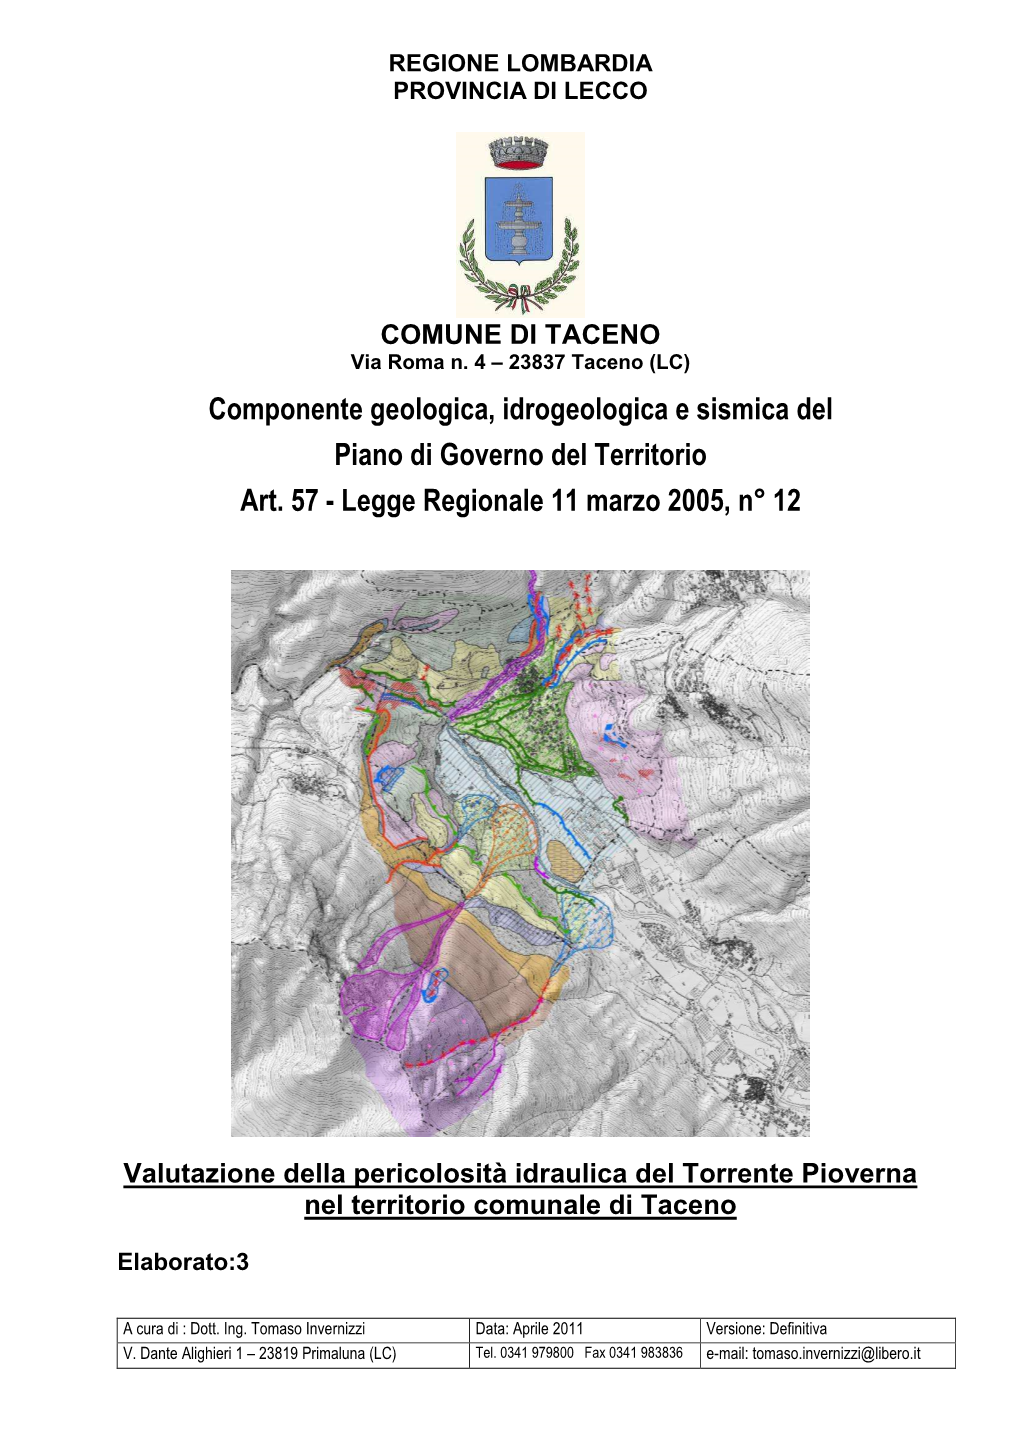 Componente Geologica, Idrogeologica E Sismica Del Piano Di Governo Del Territorio Art